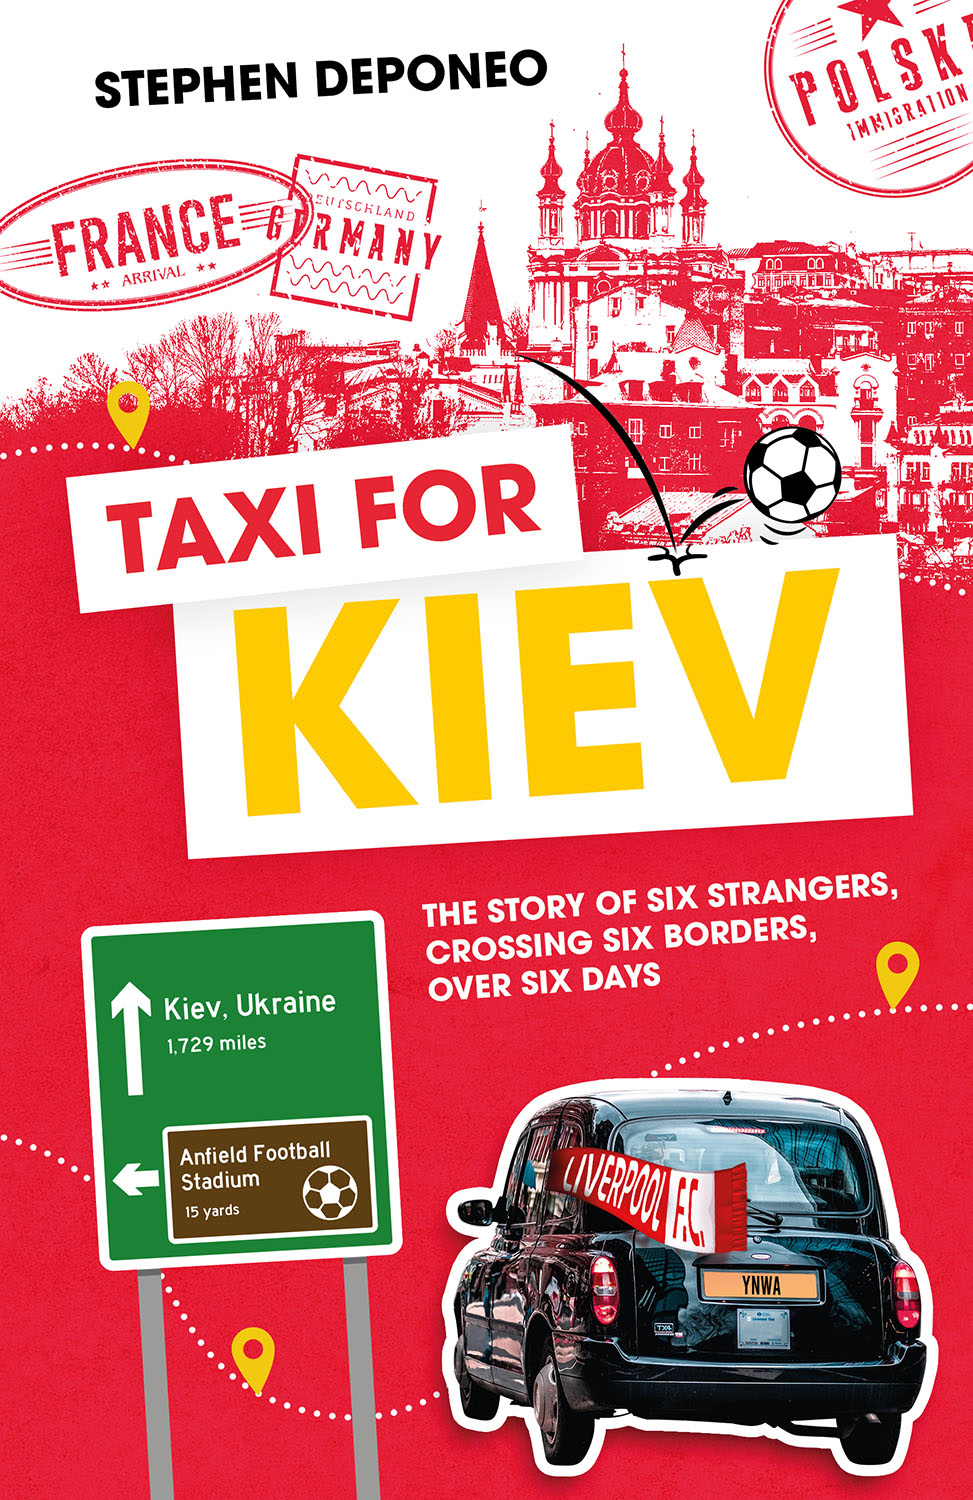 Taxi For Kiev